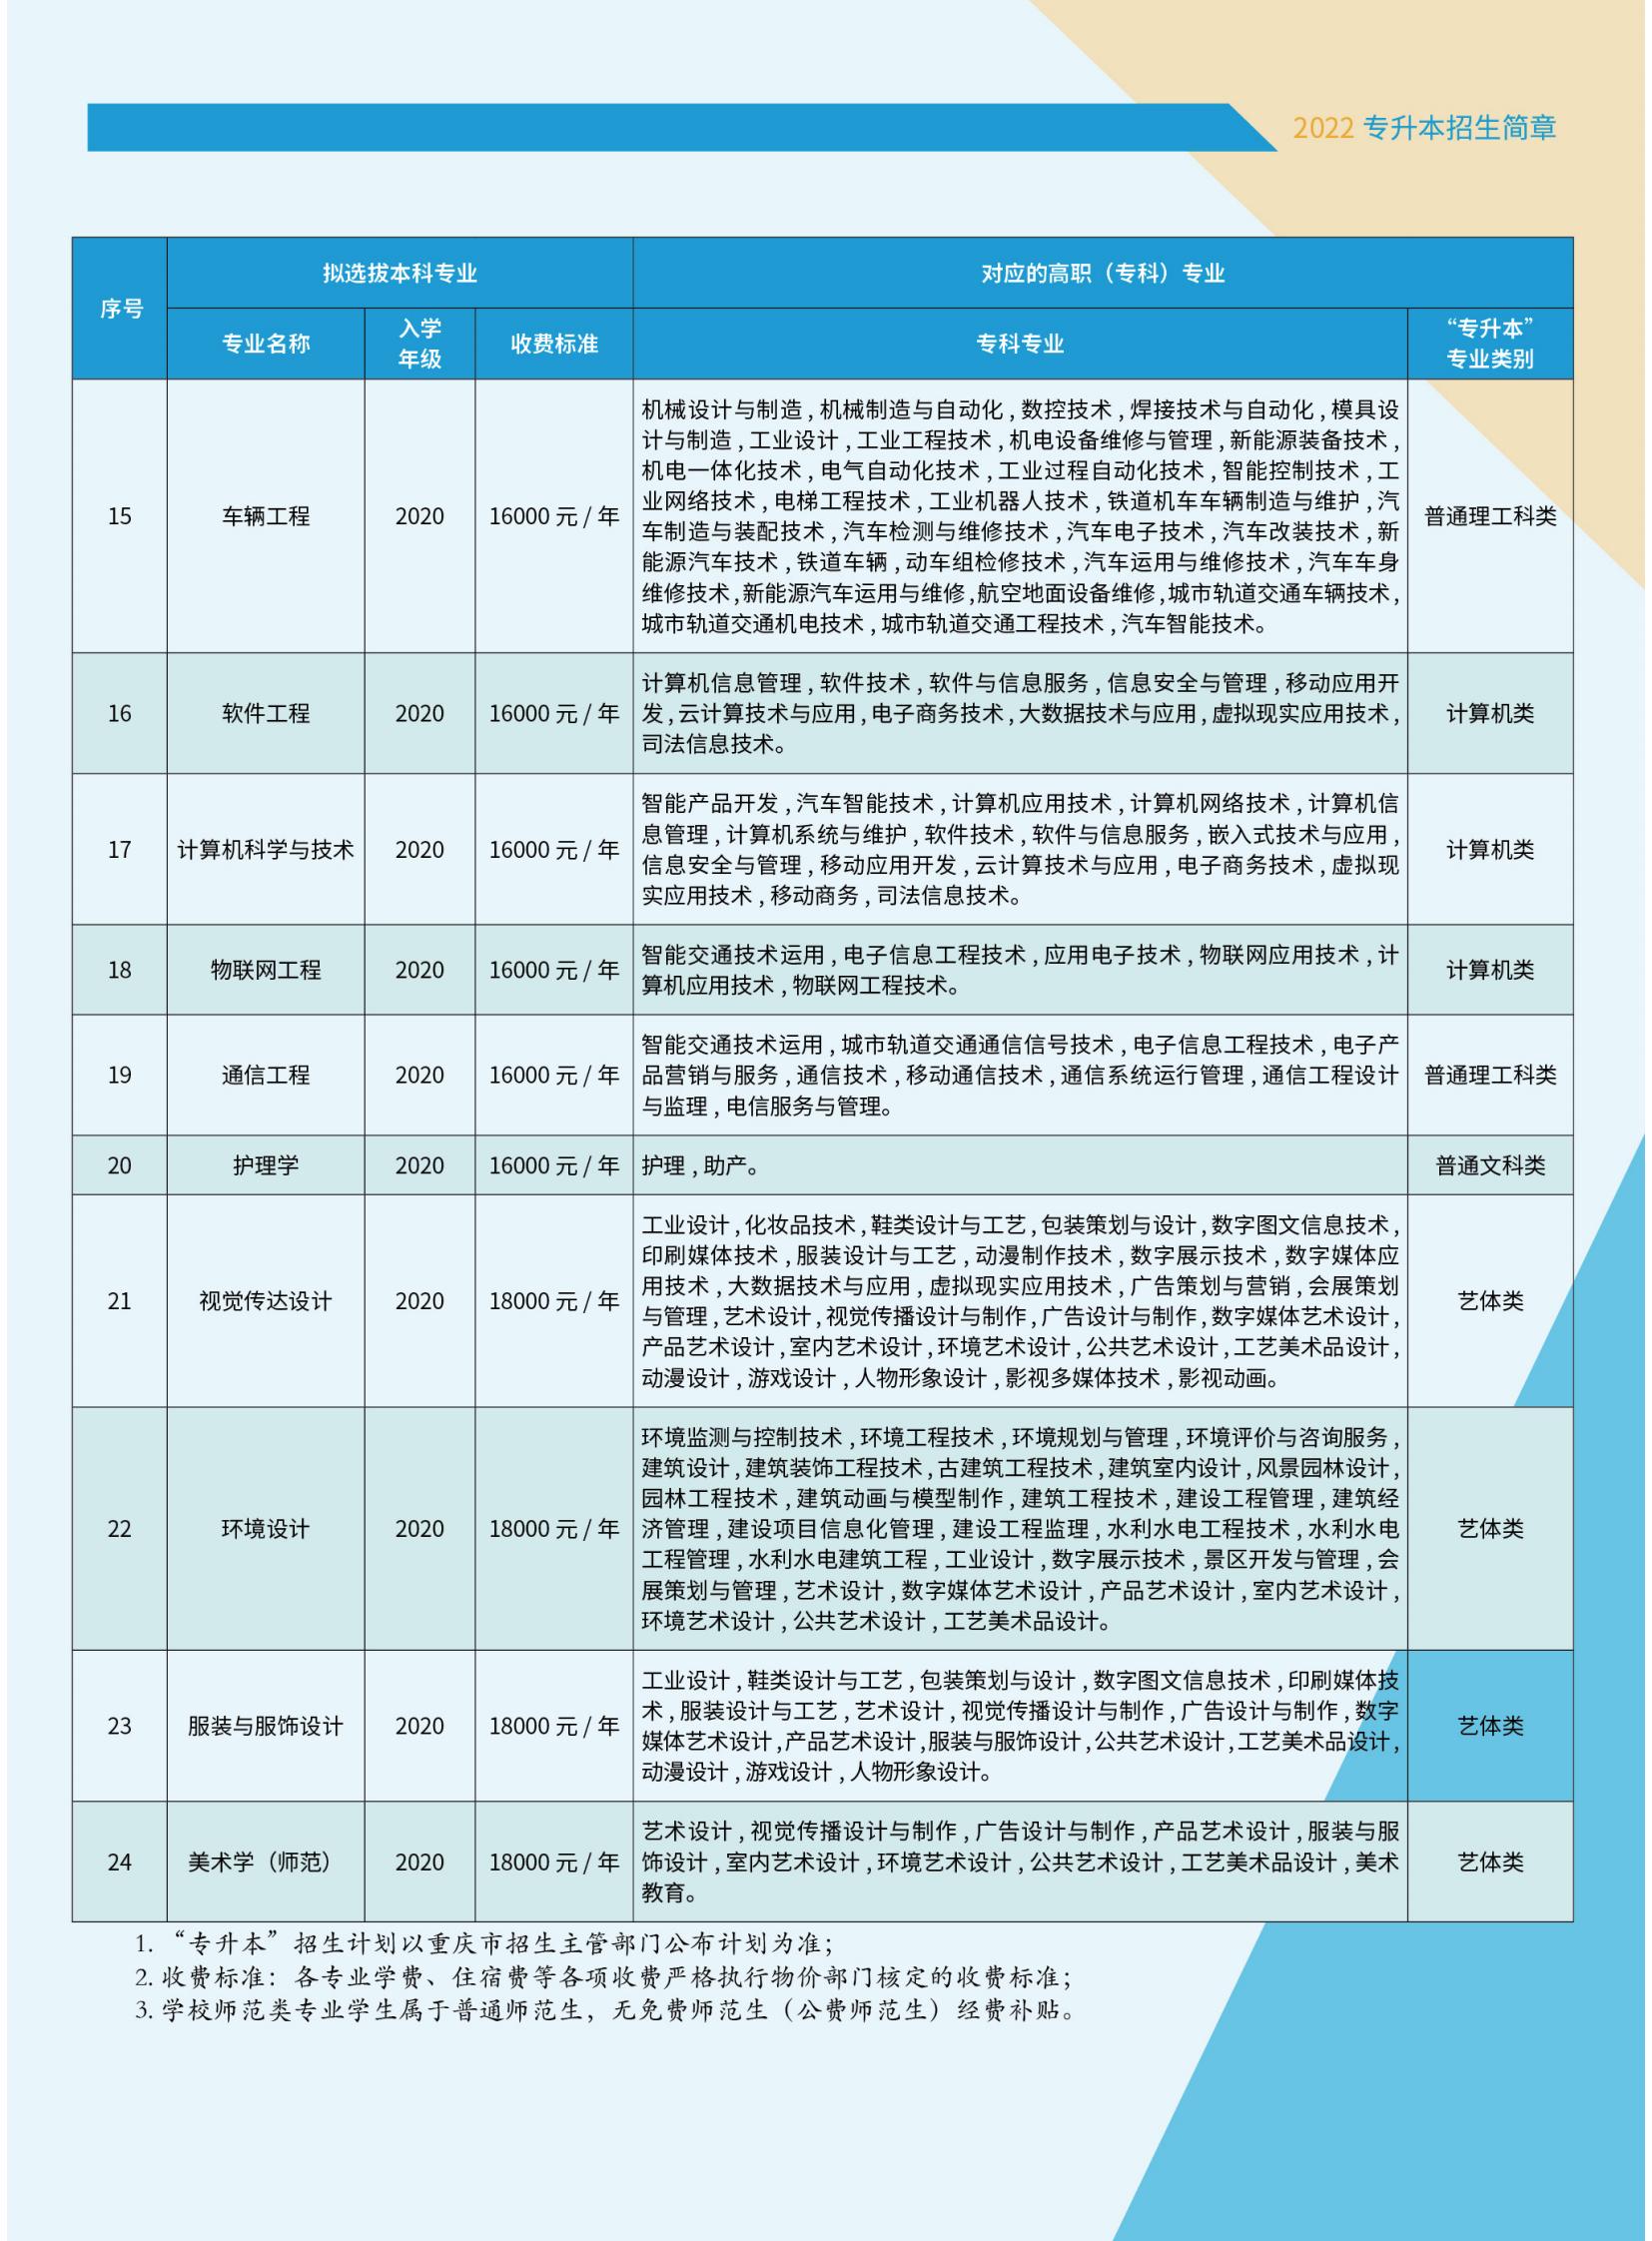 重庆人文科技学院2022年专升本招生简章_04.jpg